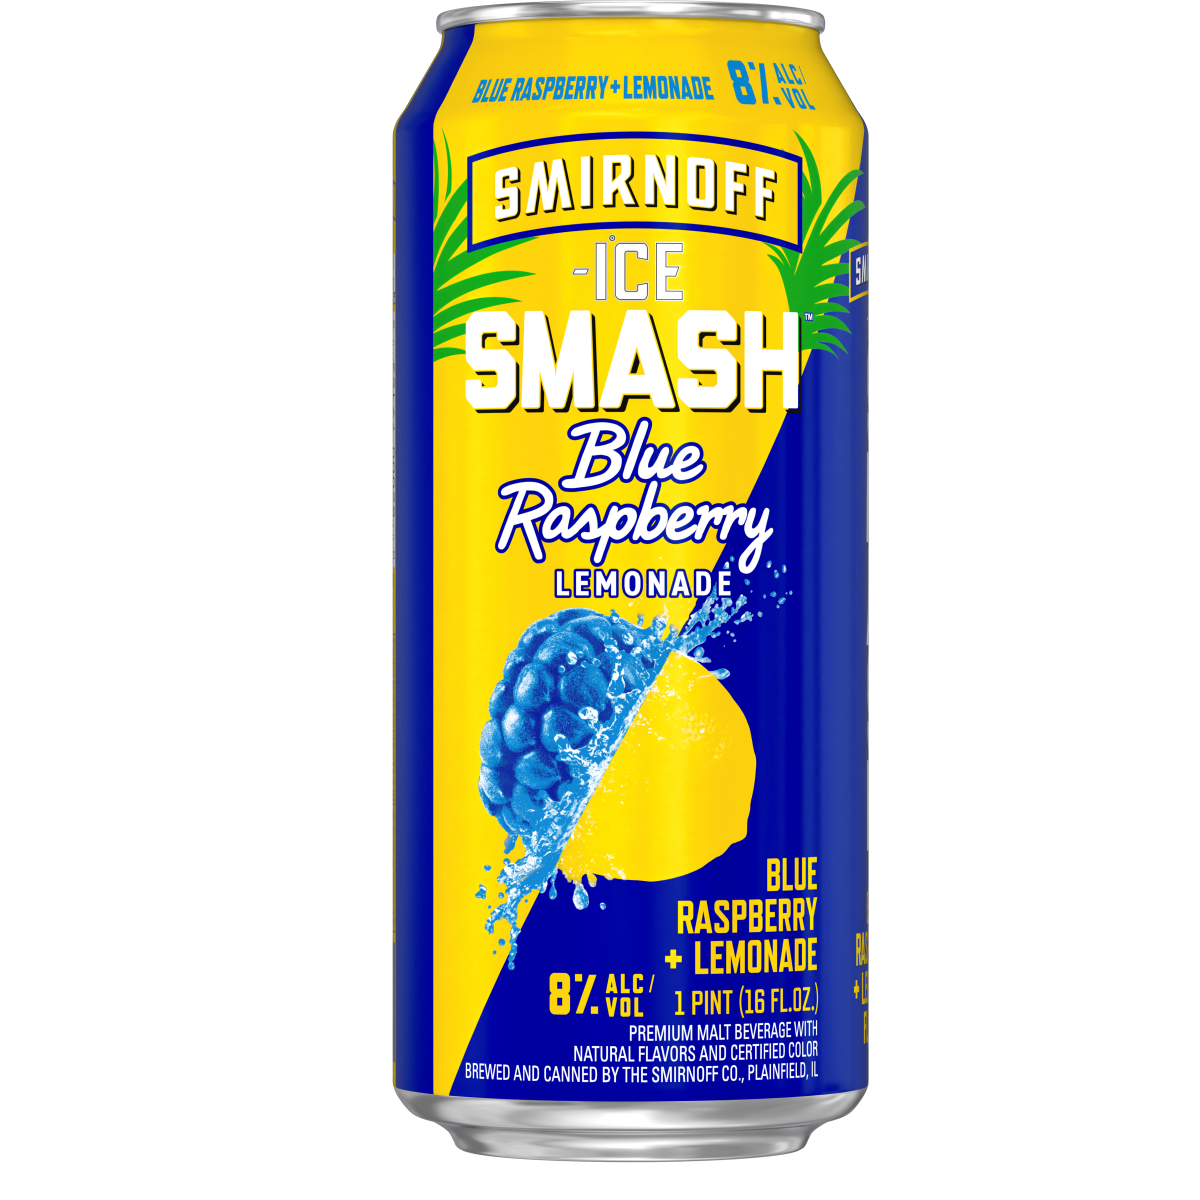 https://www.finleybeer.com/wp-content/uploads/2023/03/Smirnoff-Ice-Smash-Blue-Raspberry-Lemonade.png